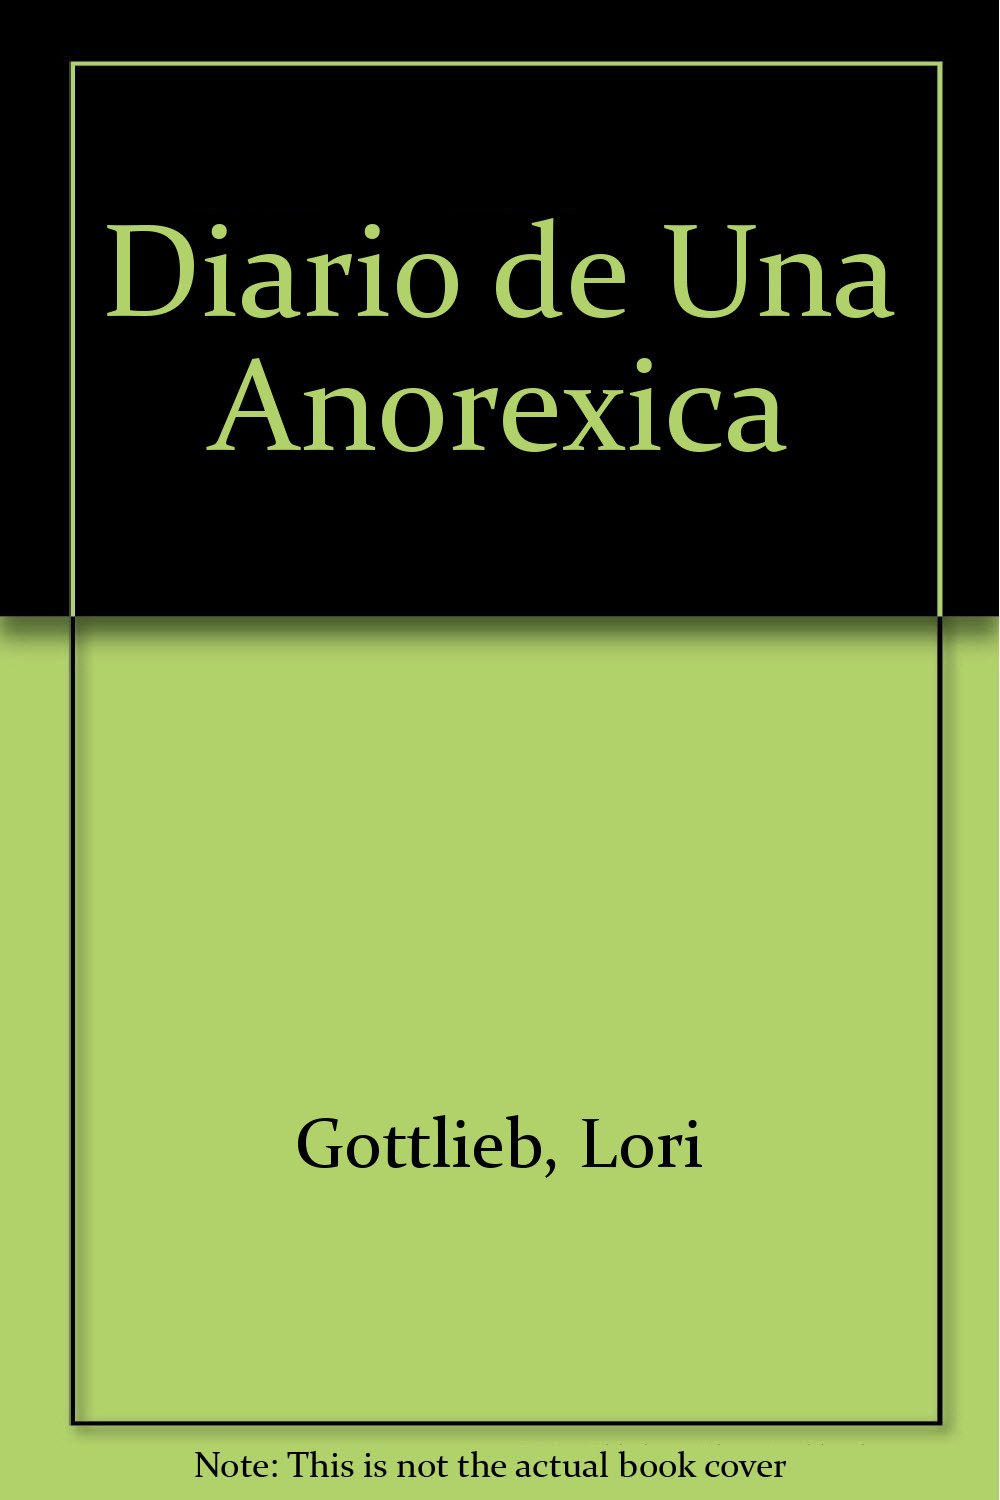 Diario de Una Anorexica